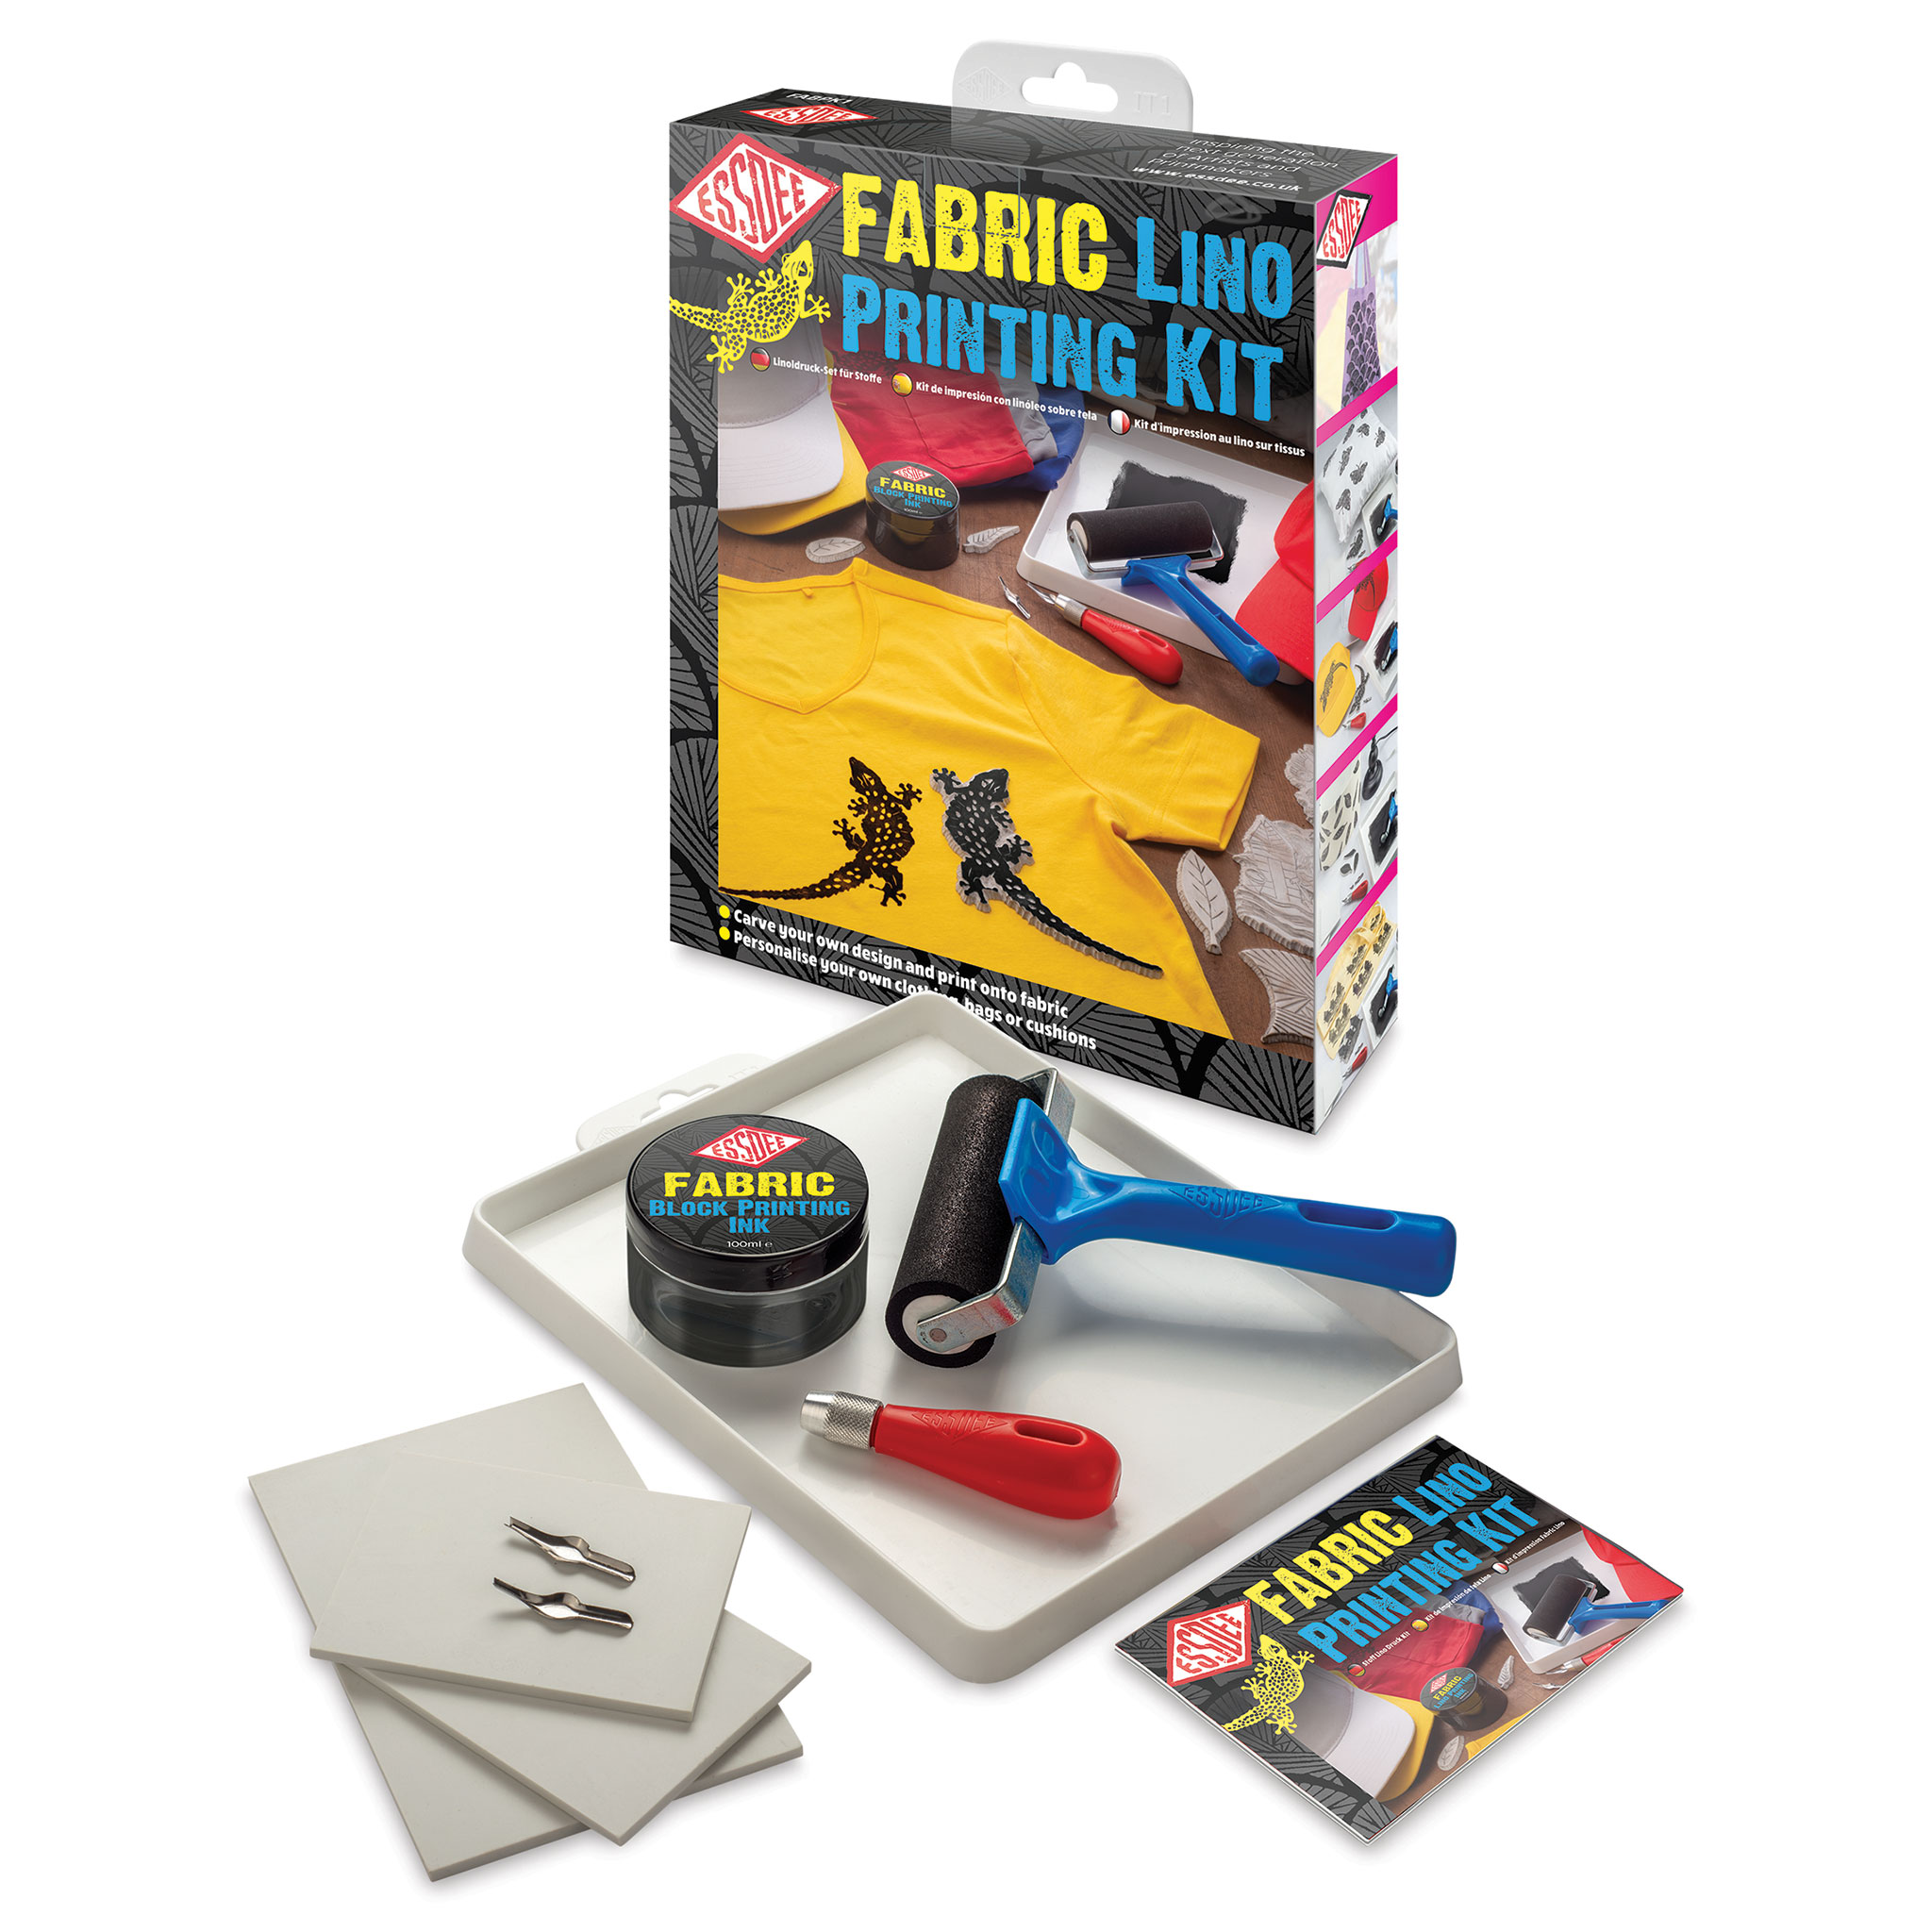 Lino cutting & printing kit